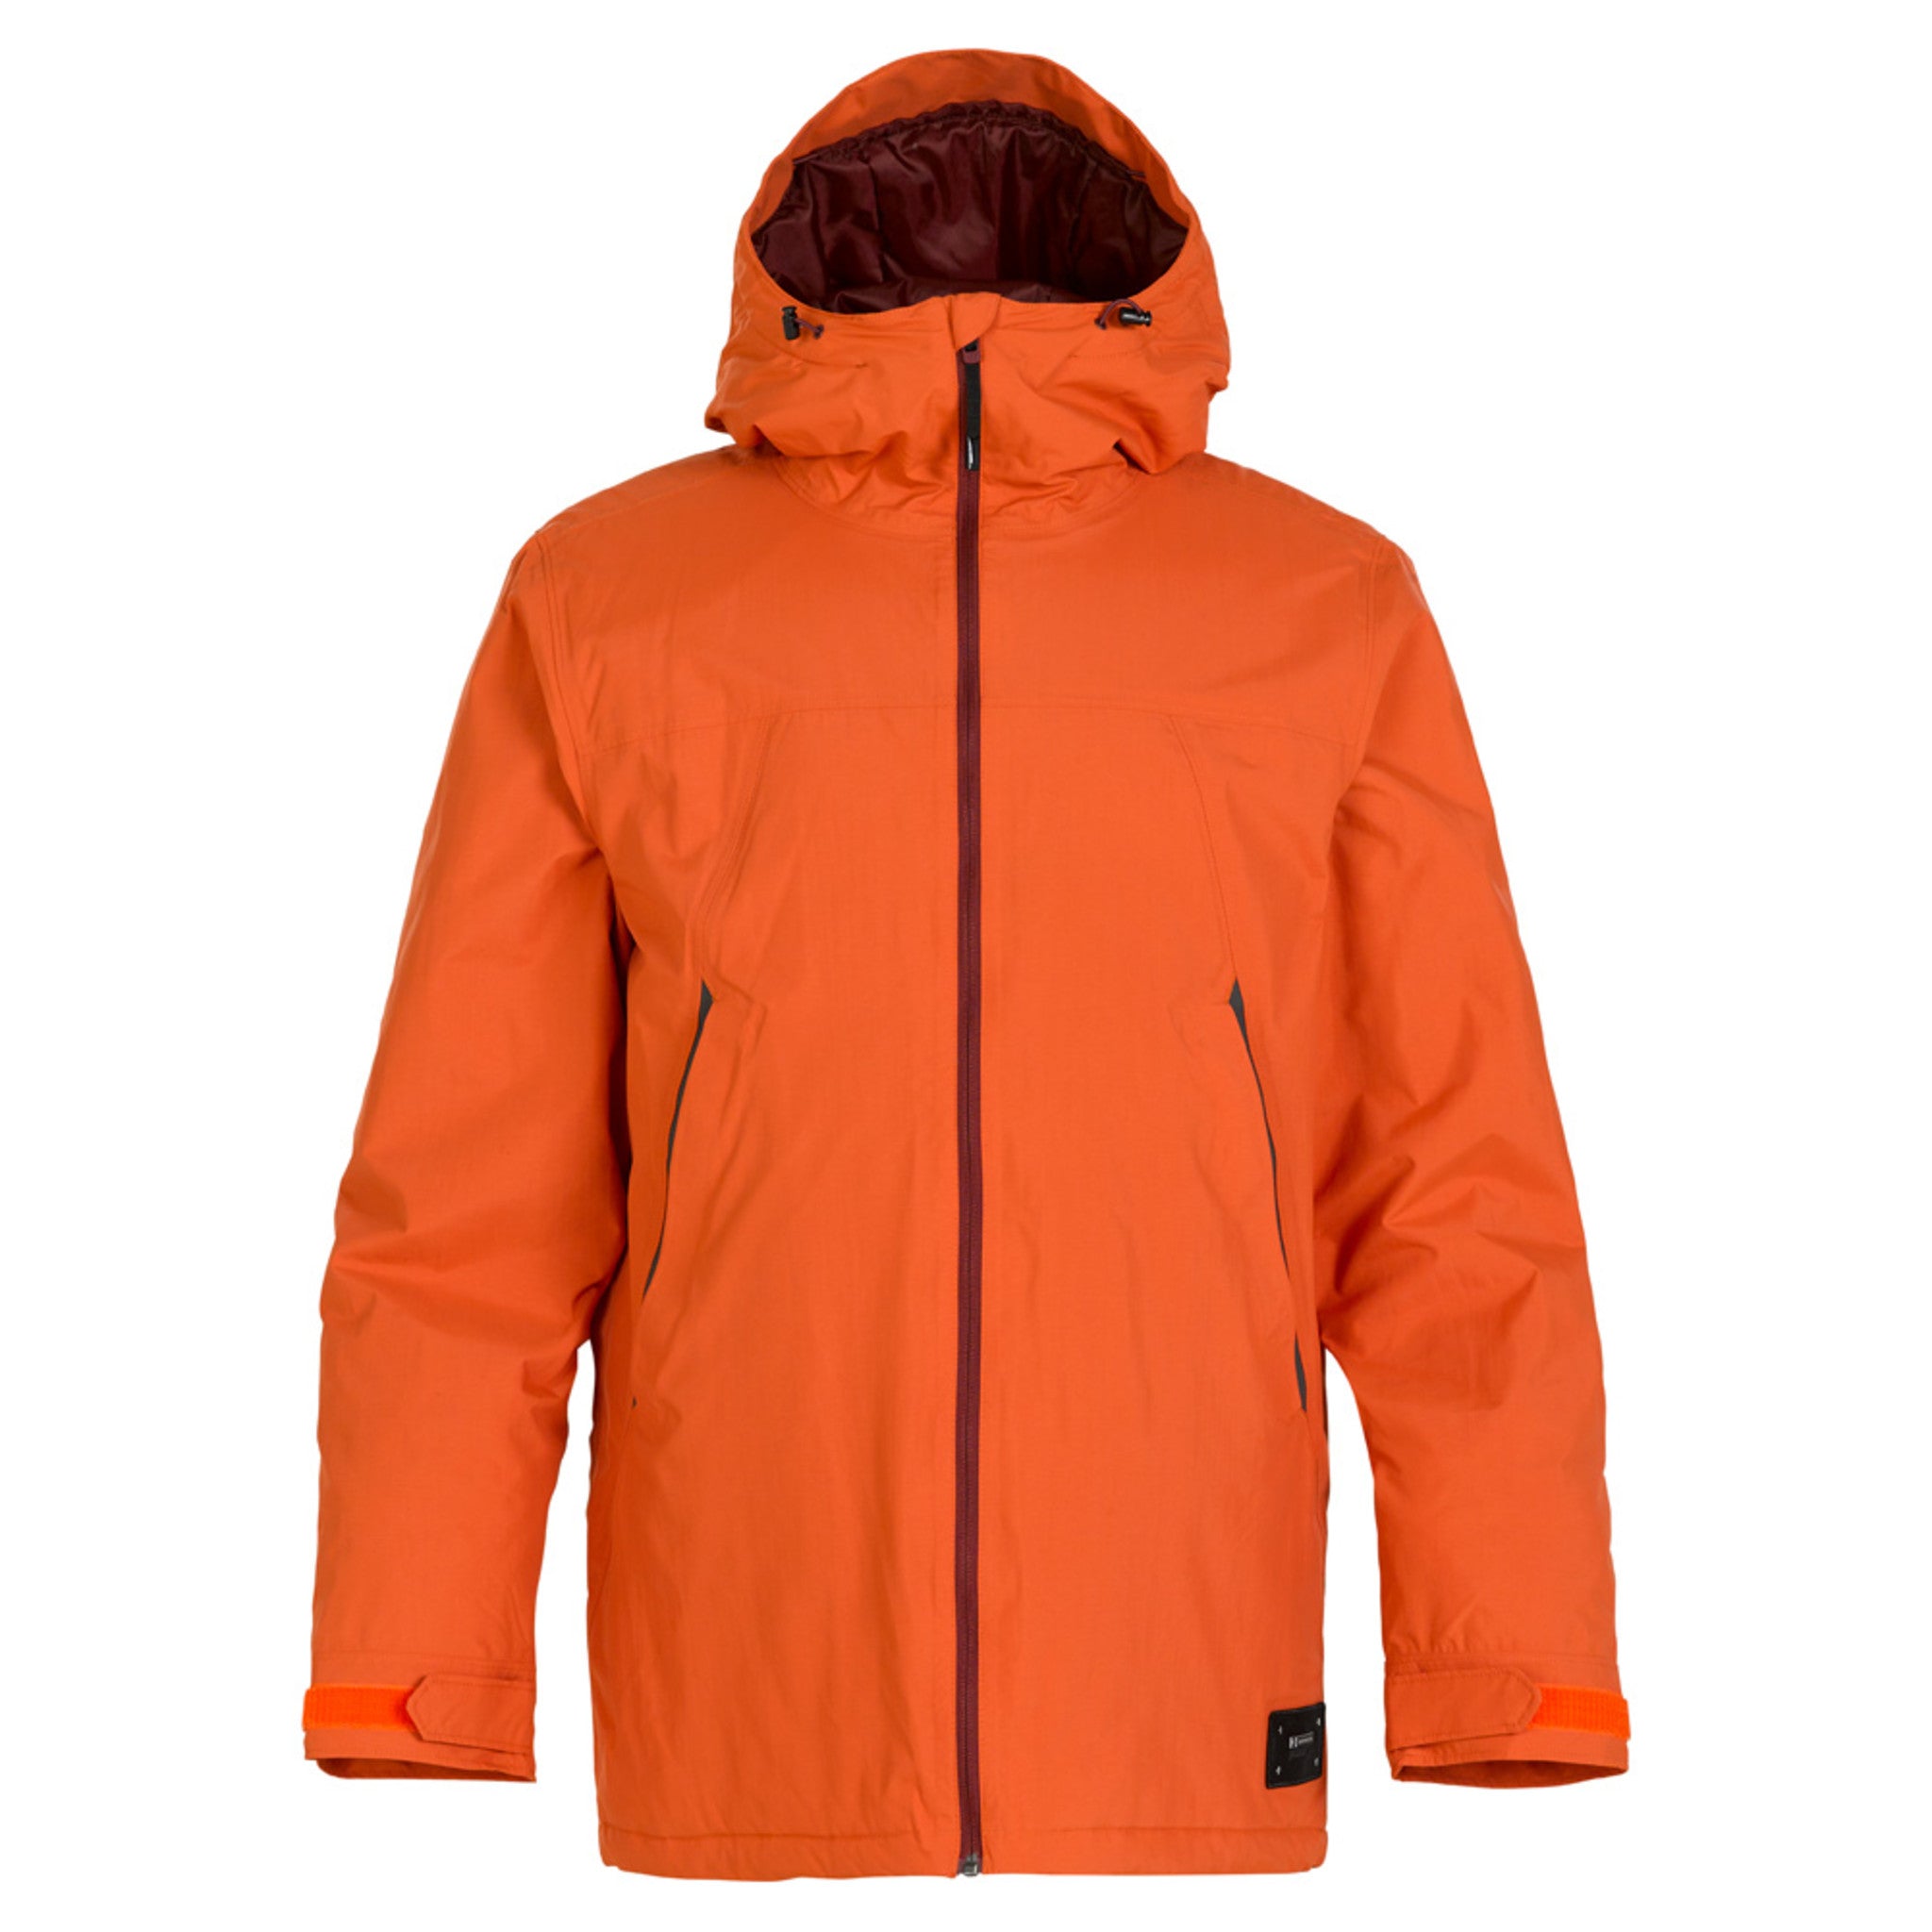 Armada Reedy 2L Men's Jacket | Snowboard / Apparel | SkiEssentials